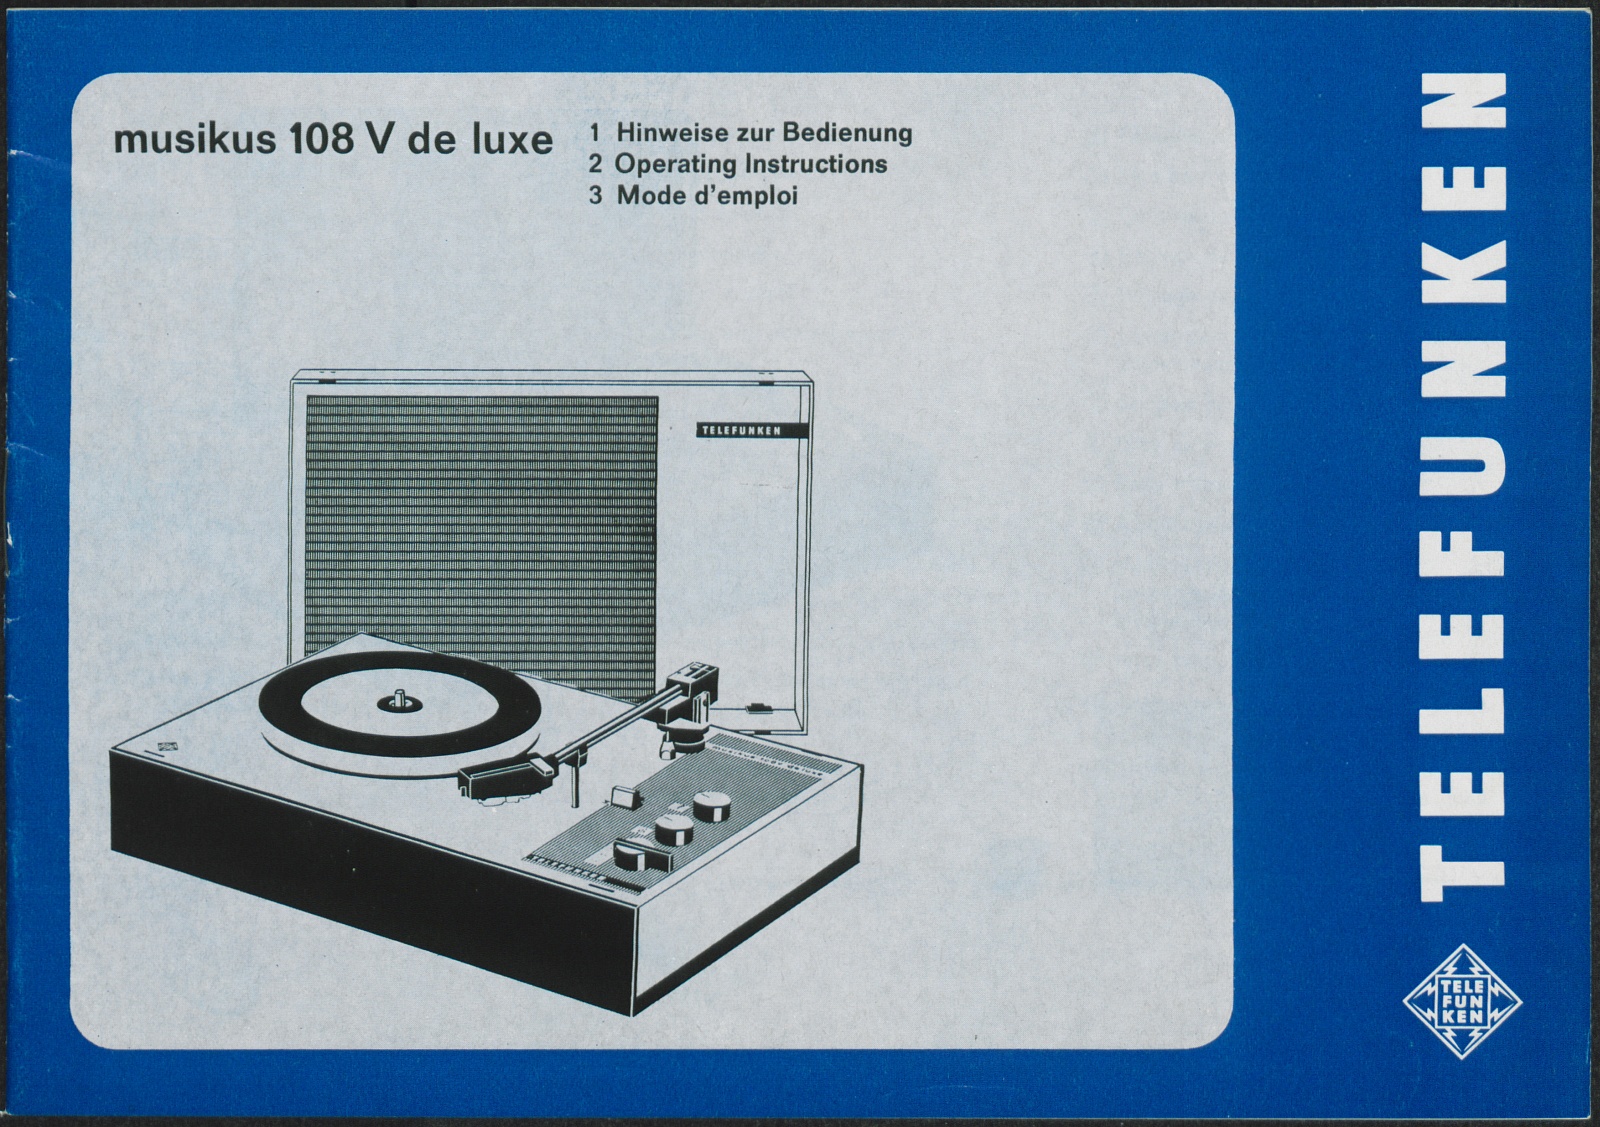 Bedienungsanleitung: Hinweise zur Bedienung des Telefunken musikus 108 V de luxe (Stiftung Deutsches Technikmuseum Berlin CC0)